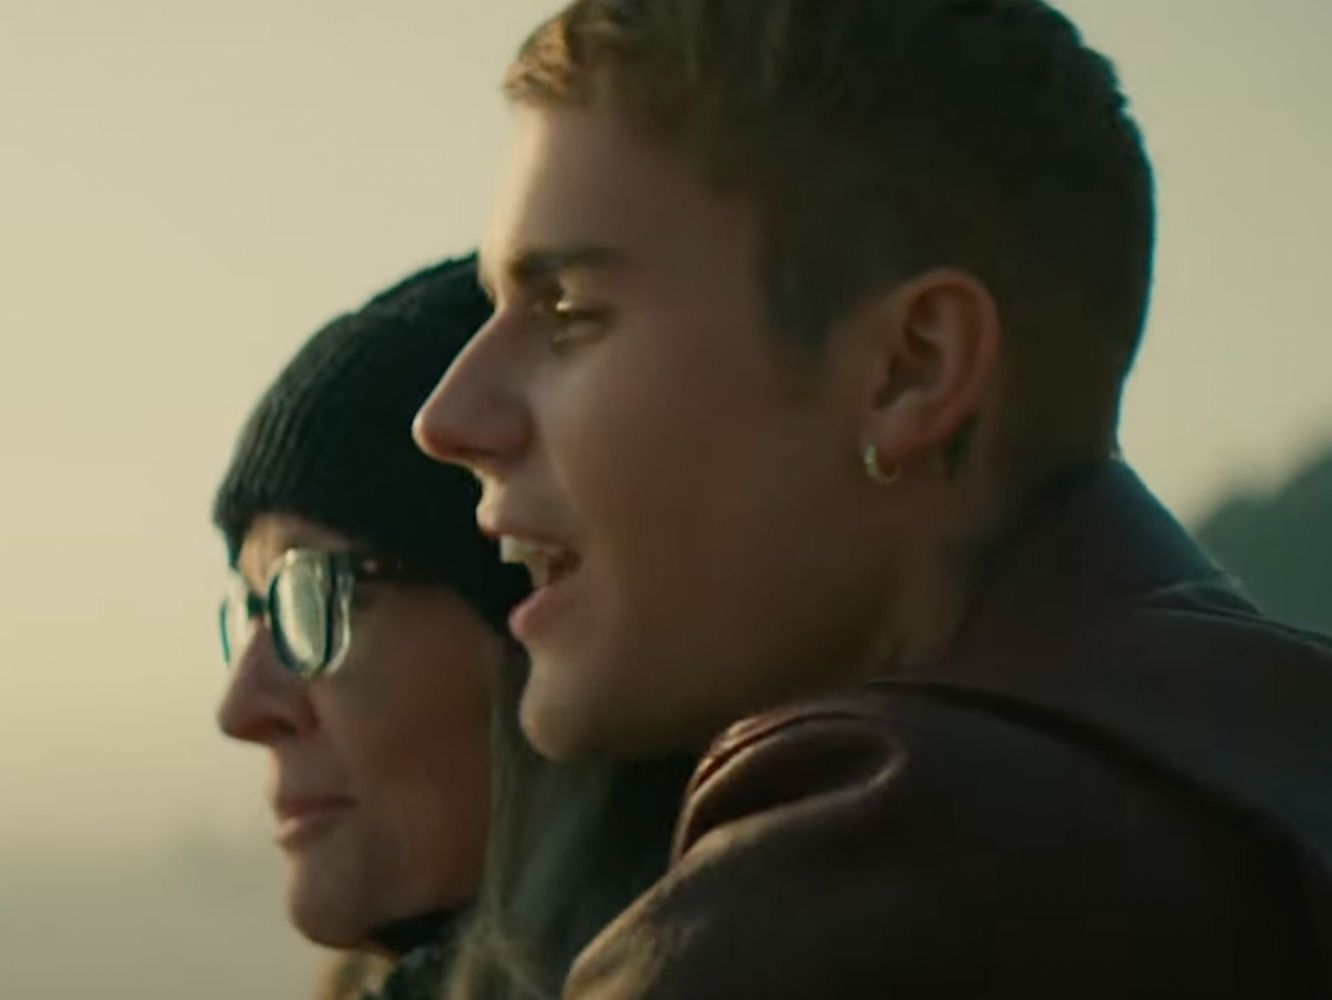  Justin Bieber saca partido de su cursillo de 20 horas de coach emocional en ‘Ghost’, con Diane Keaton